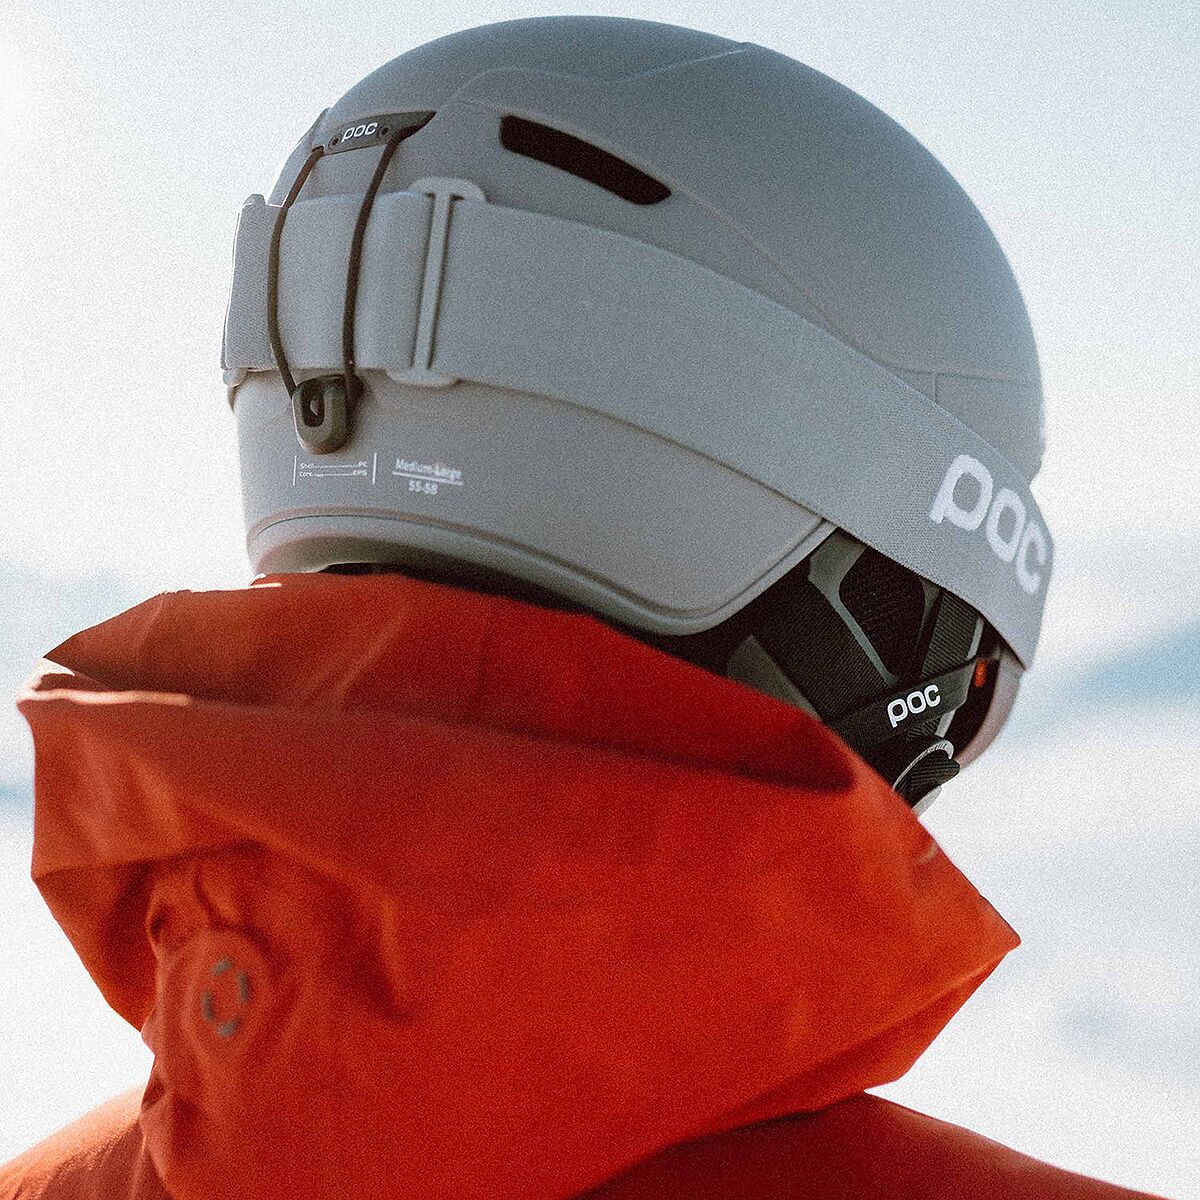 Poc OBEX PURE, ski helmet - Bora